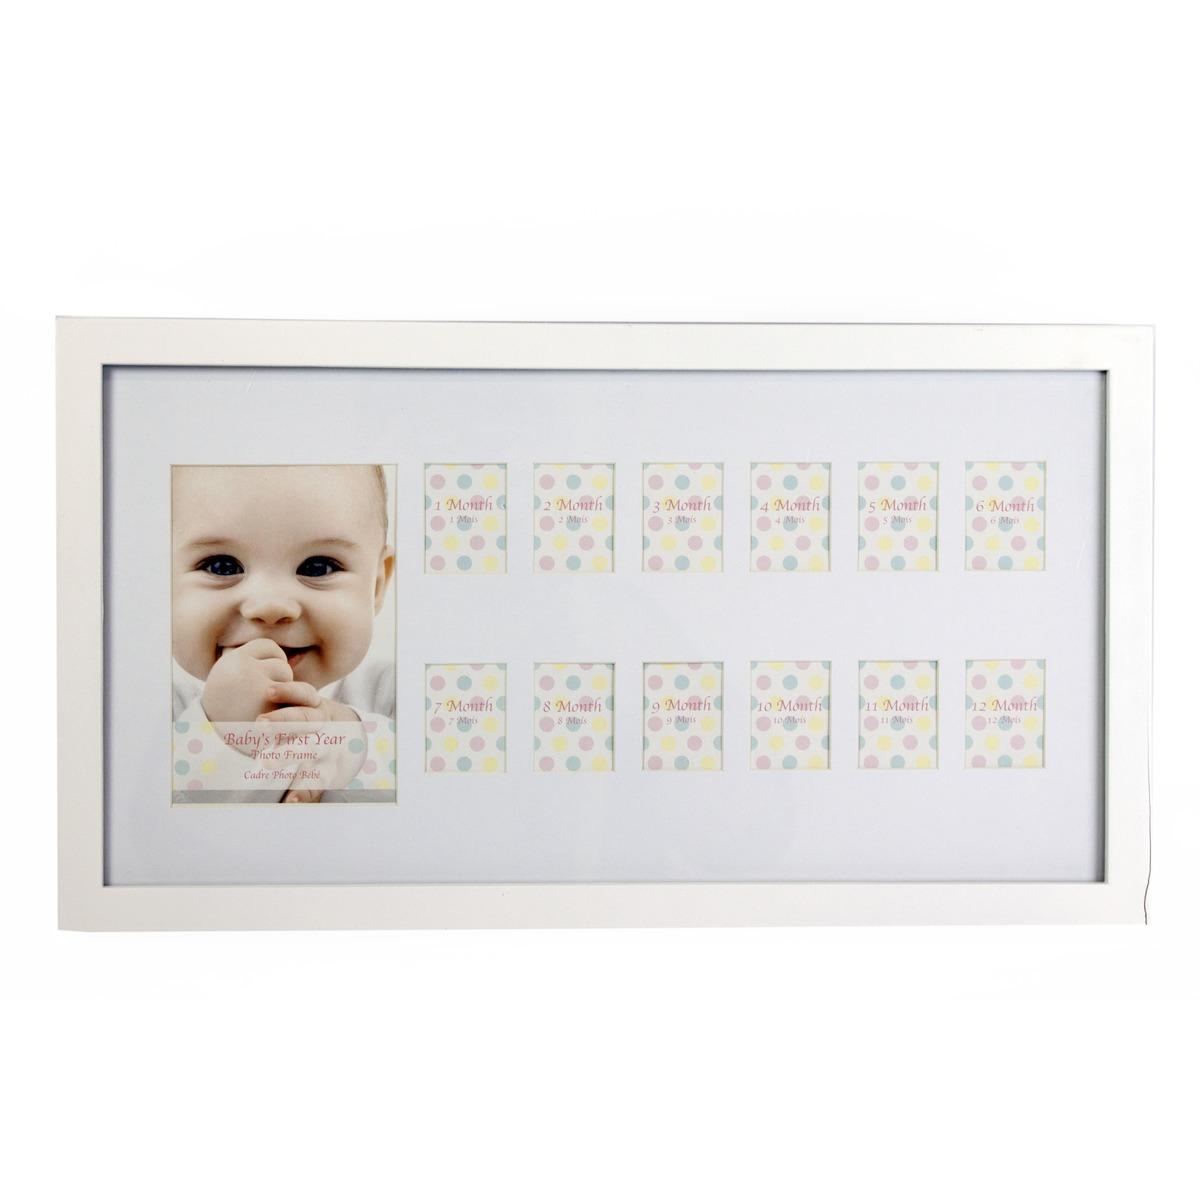 Cadre photo blanc pour bébé - 12 mois - 25 x 45 cm